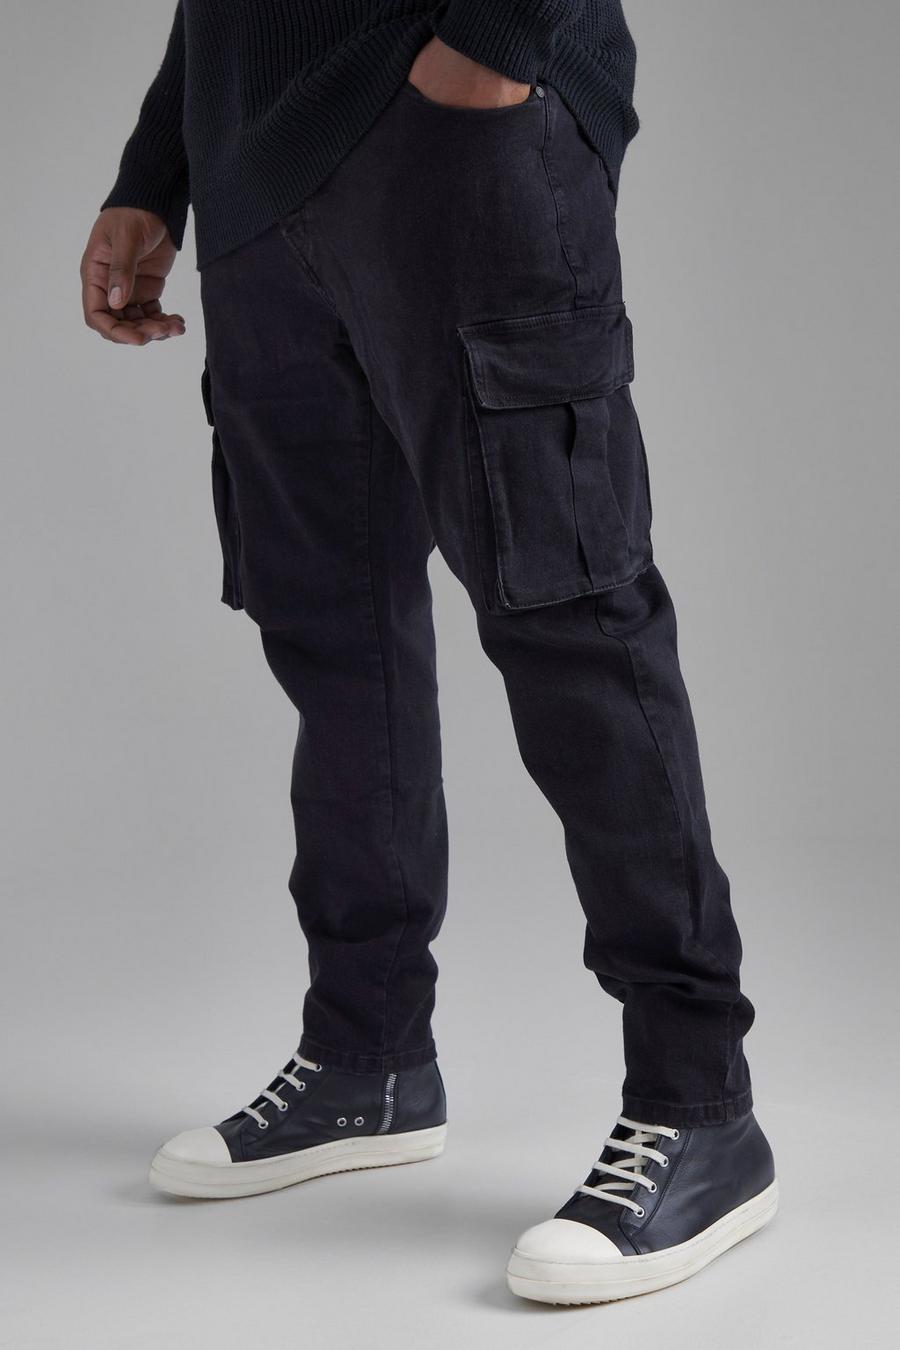 שחור דהוי ג'ינס סקיני דגמ'ח נמתח, מידות גדולות